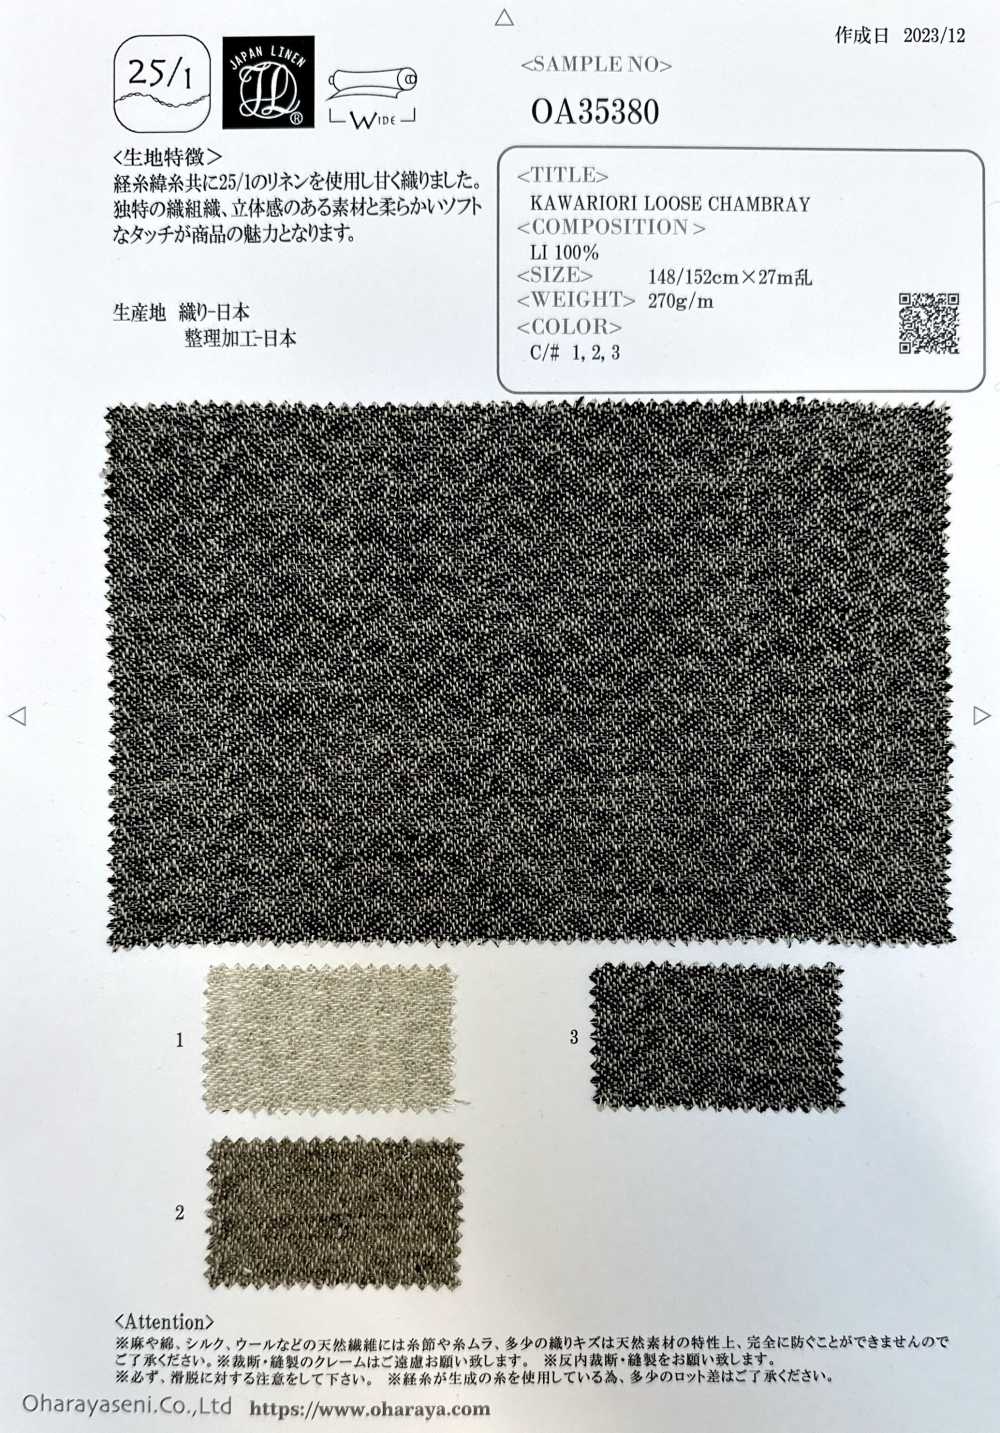 OA35380 CHAMBRAY AMPLE KAWARIORI[Fabrication De Textile] Oharayaseni